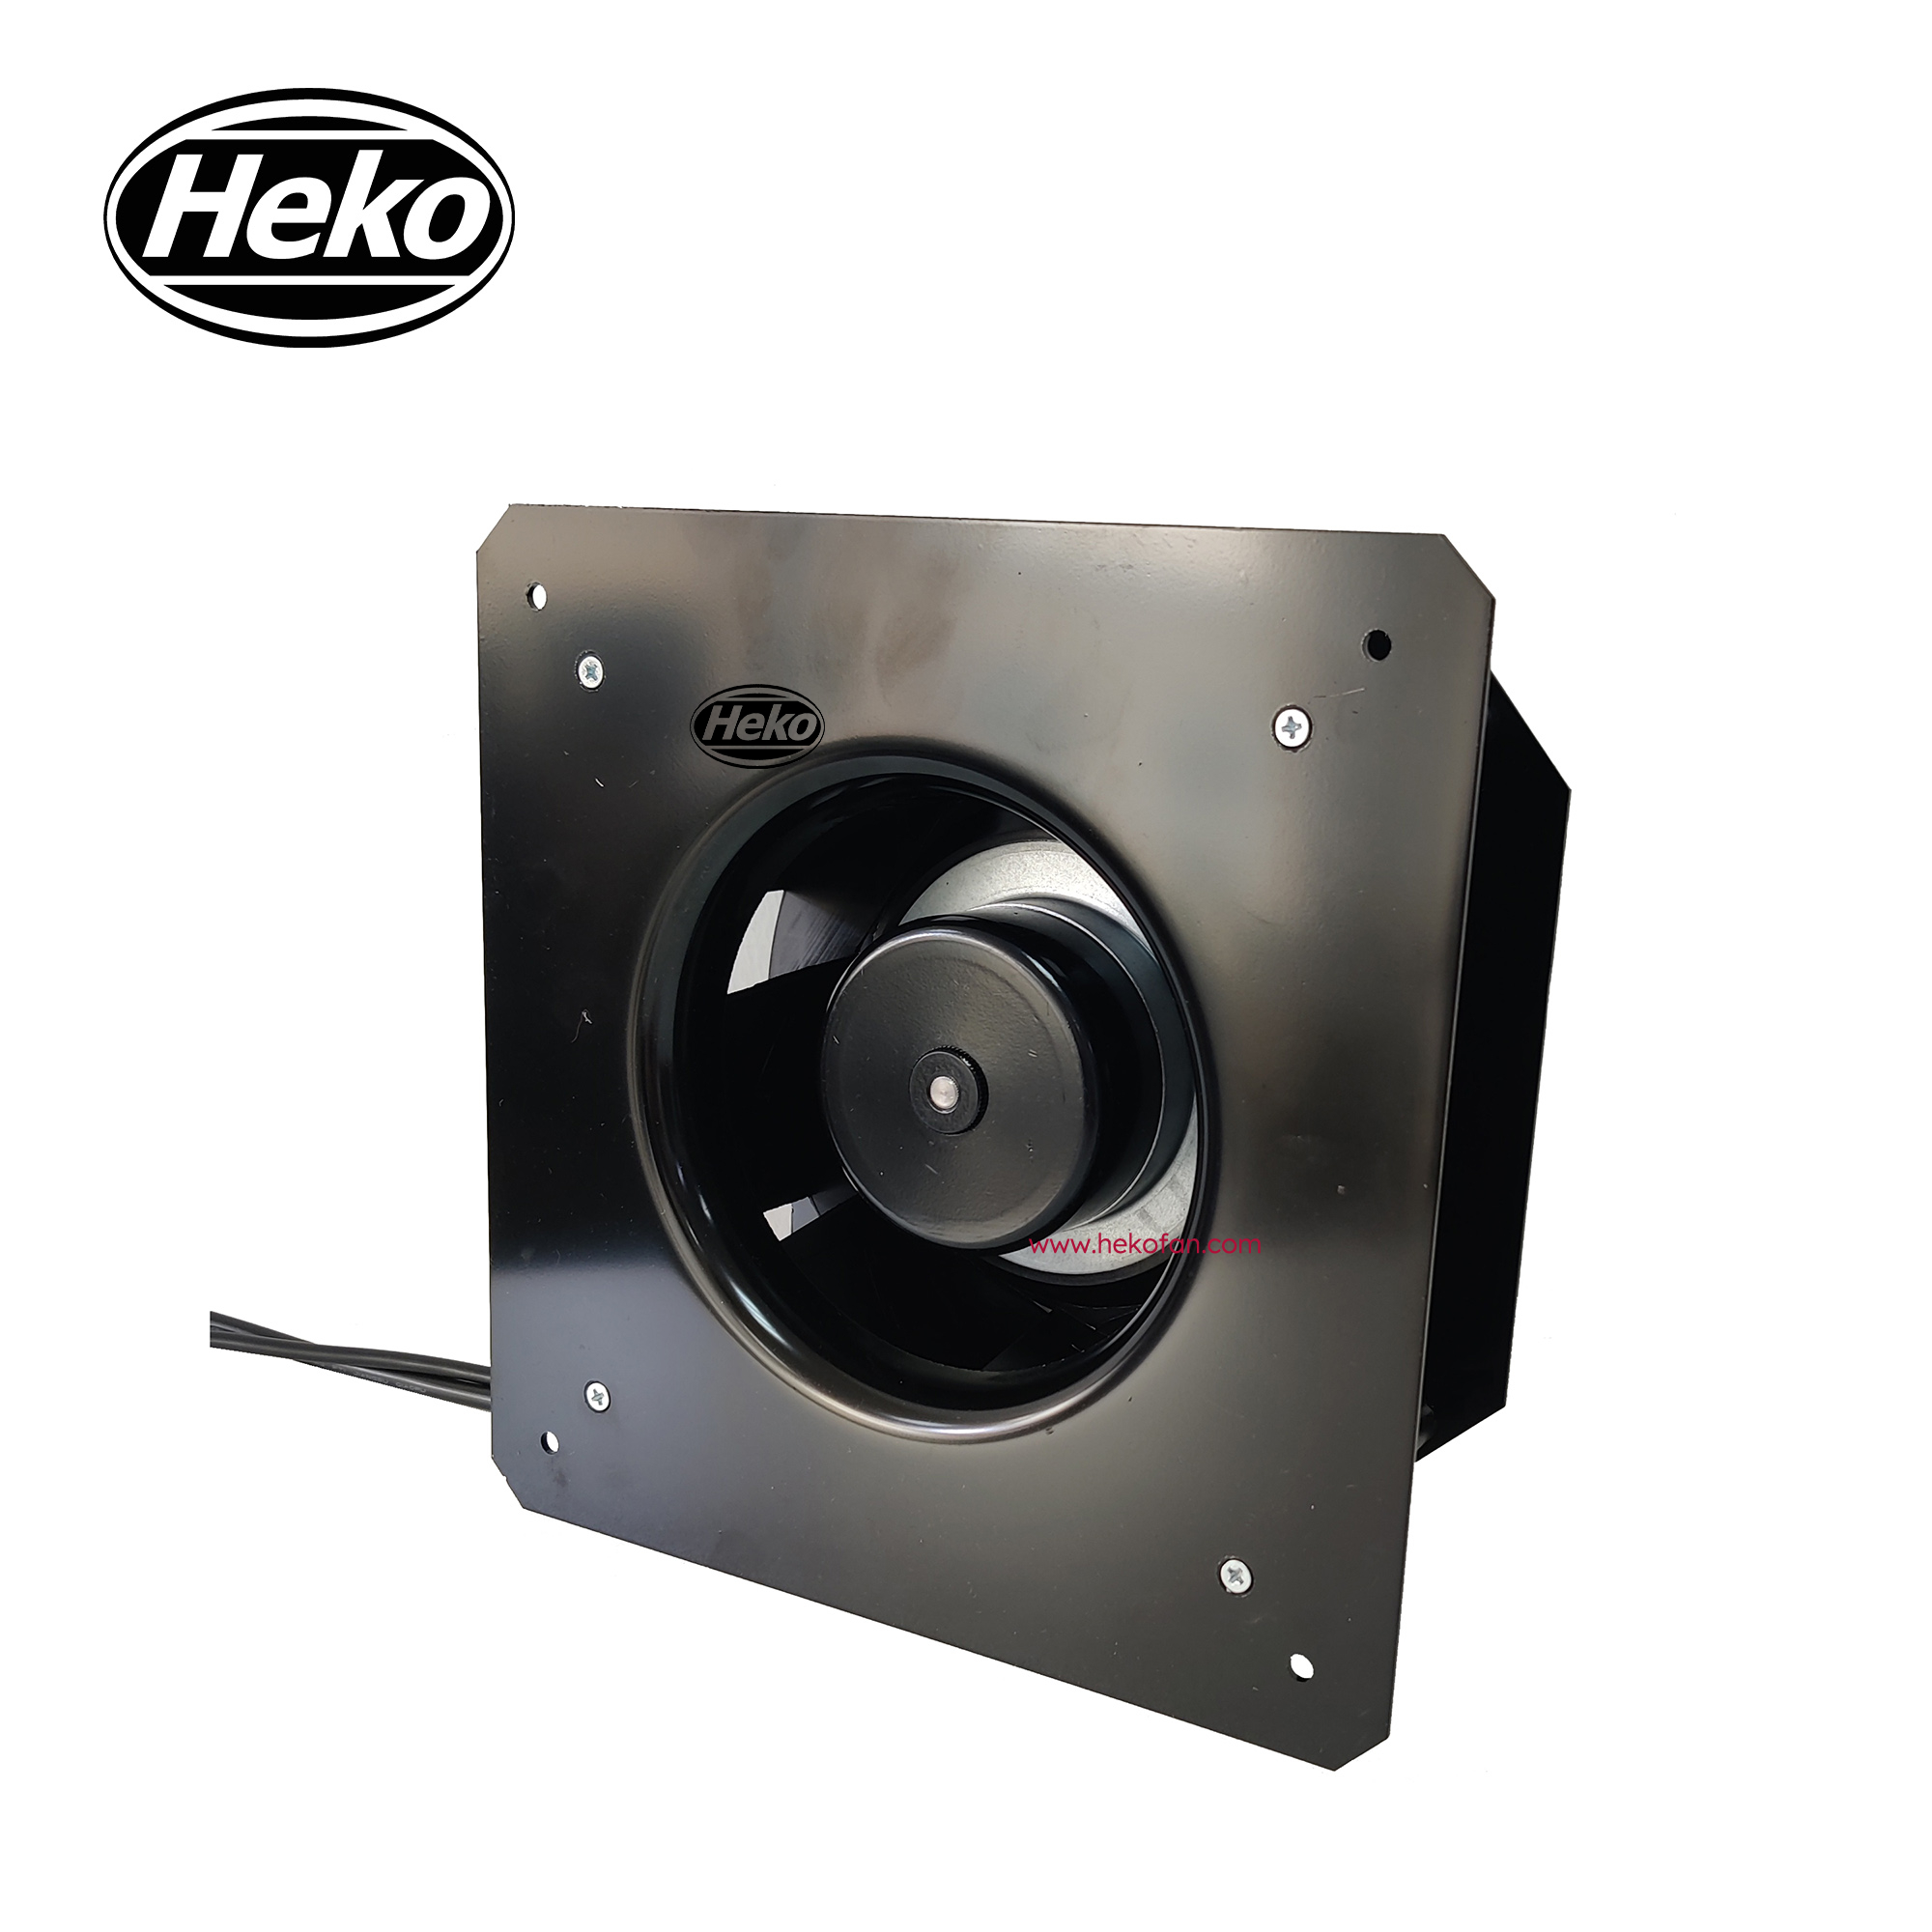 HEKO EC175mm se puede personalizar ventilador centrífugo curvado hacia atrás